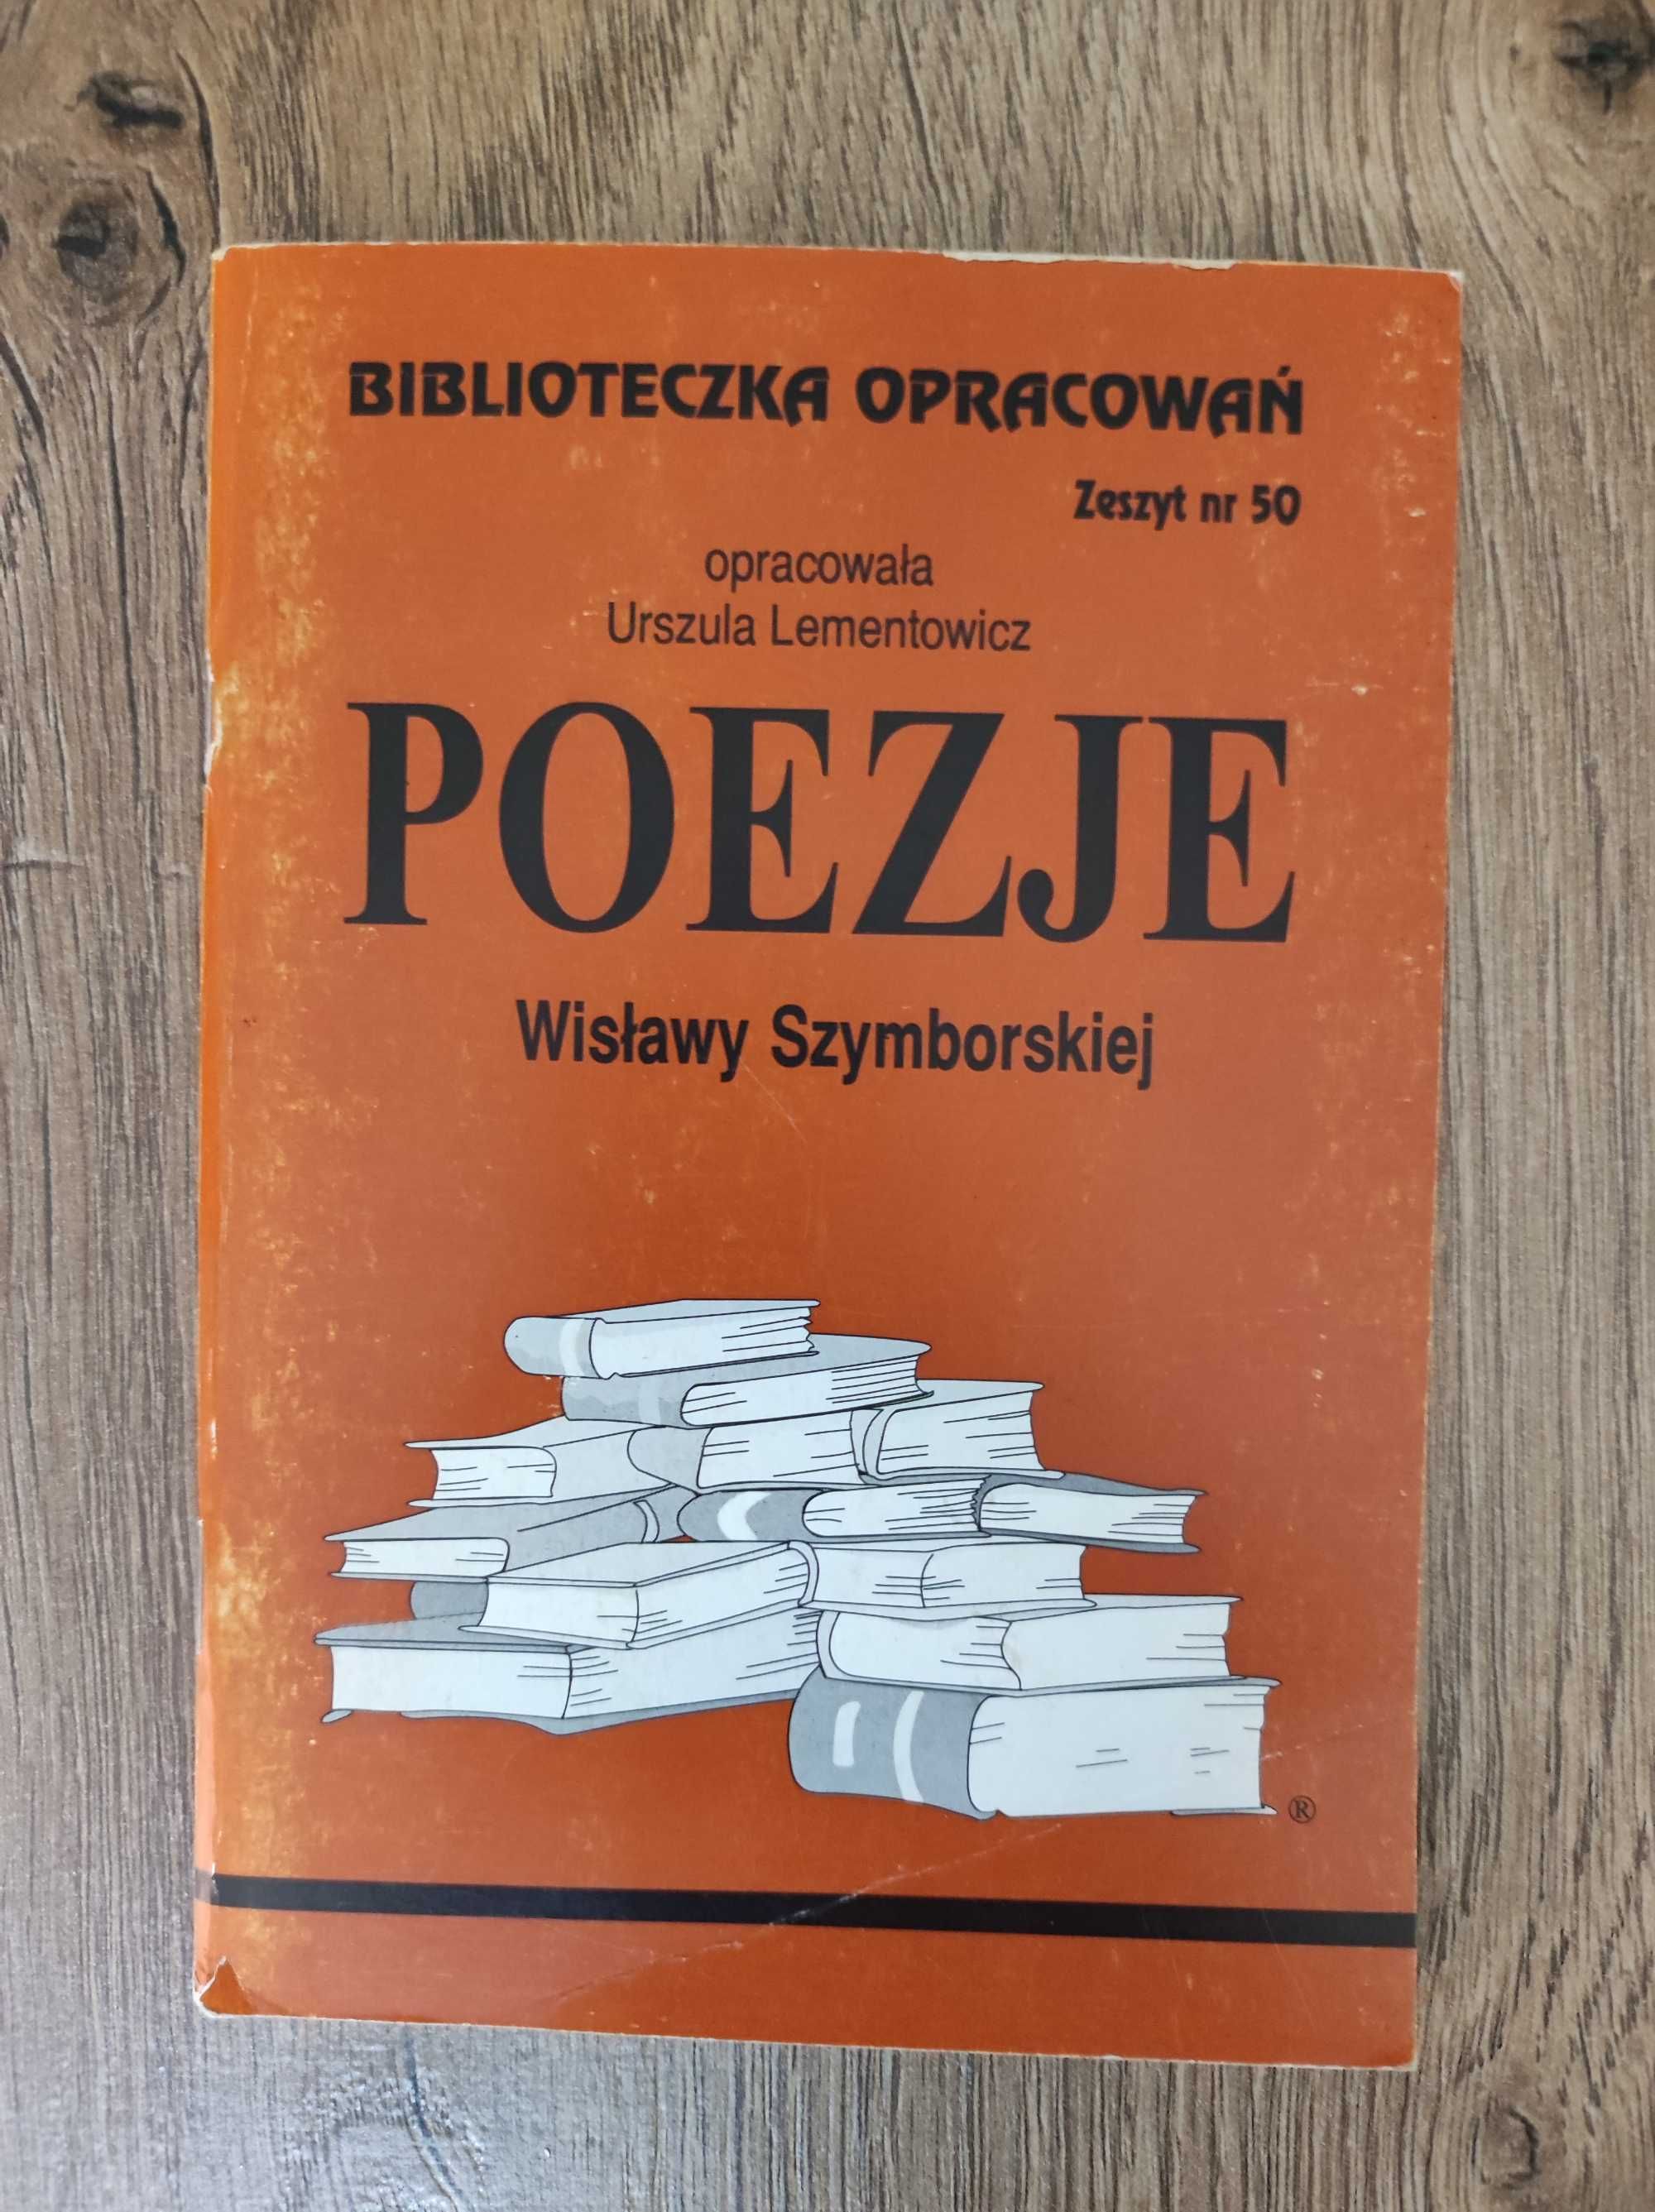 Poezje Wisławy Szymborskiej - Biblioteczka Opracowań. Zeszyt Nr 50